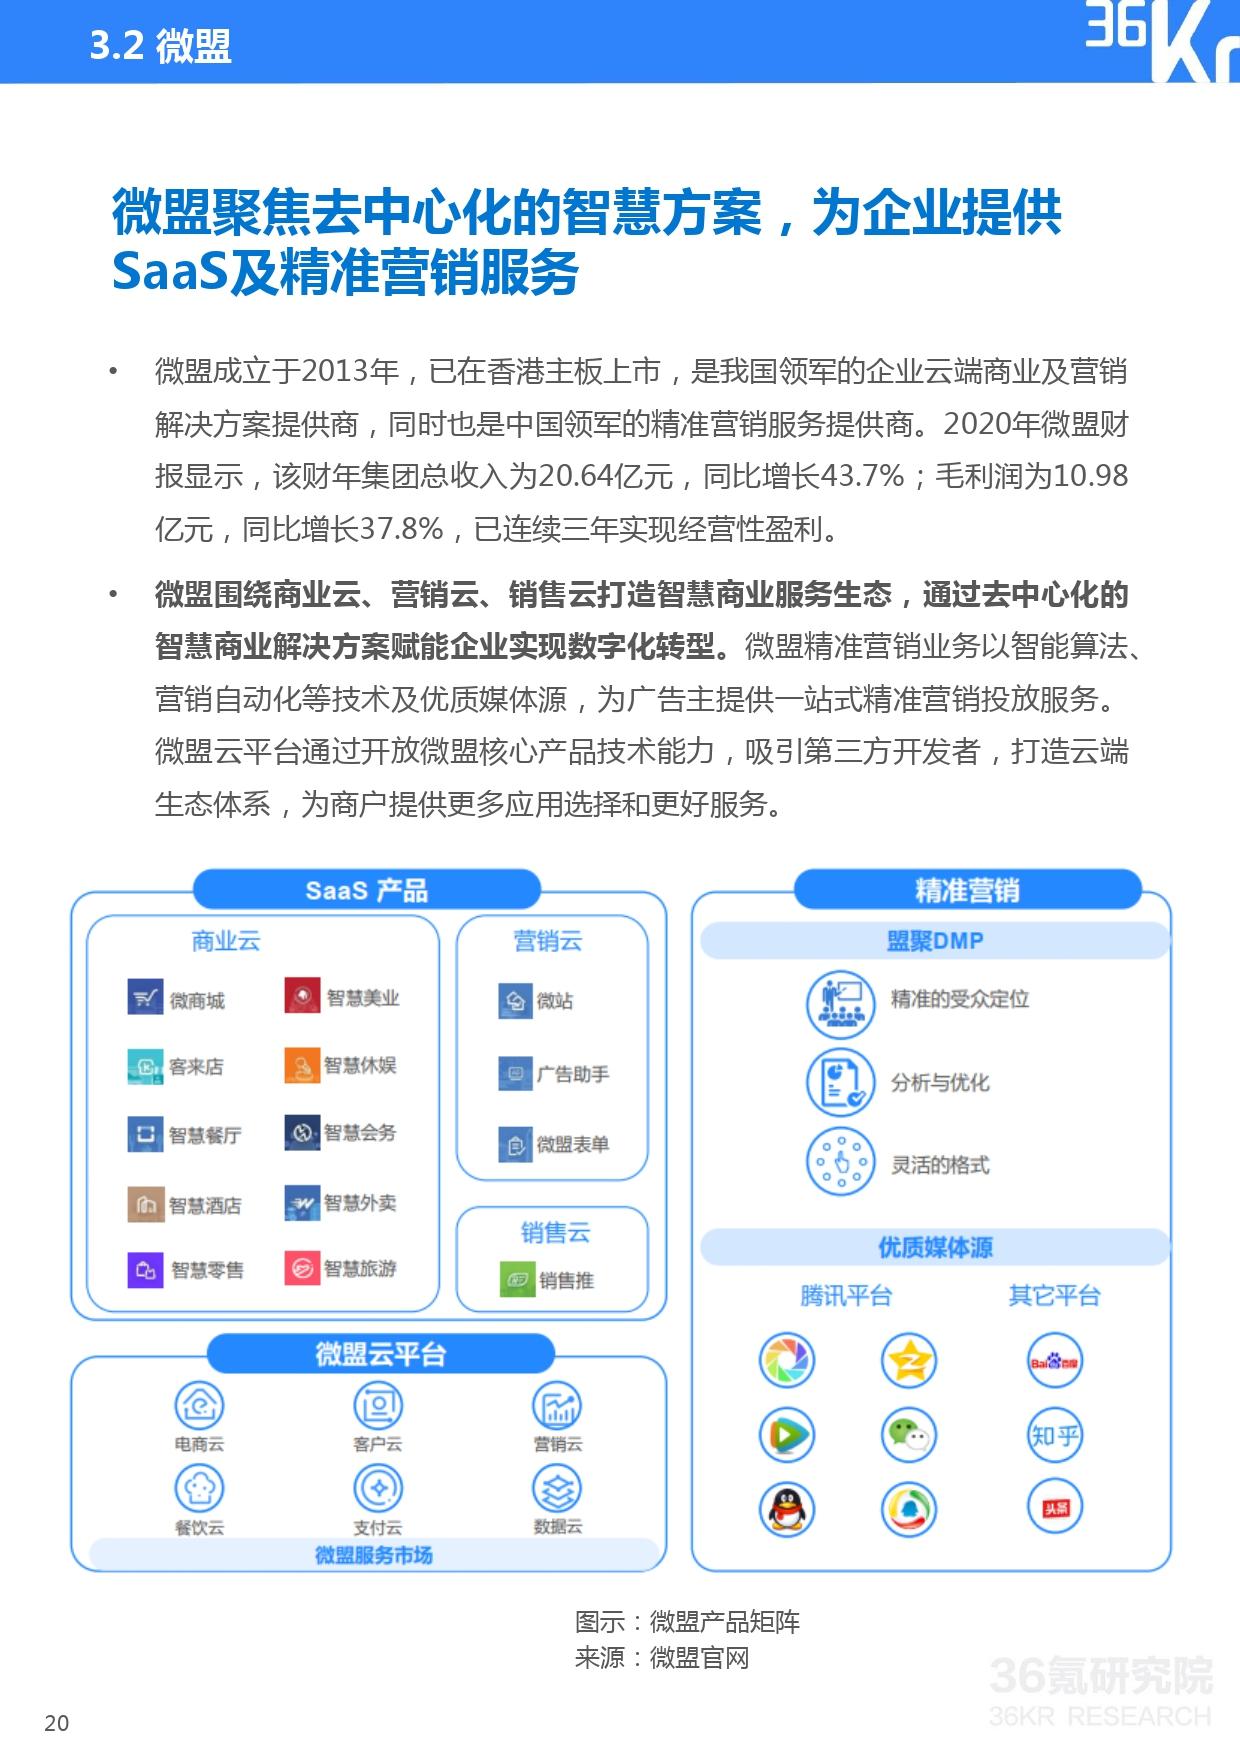 36氪研究院 | 2021年中国电商SaaS行业研究报告